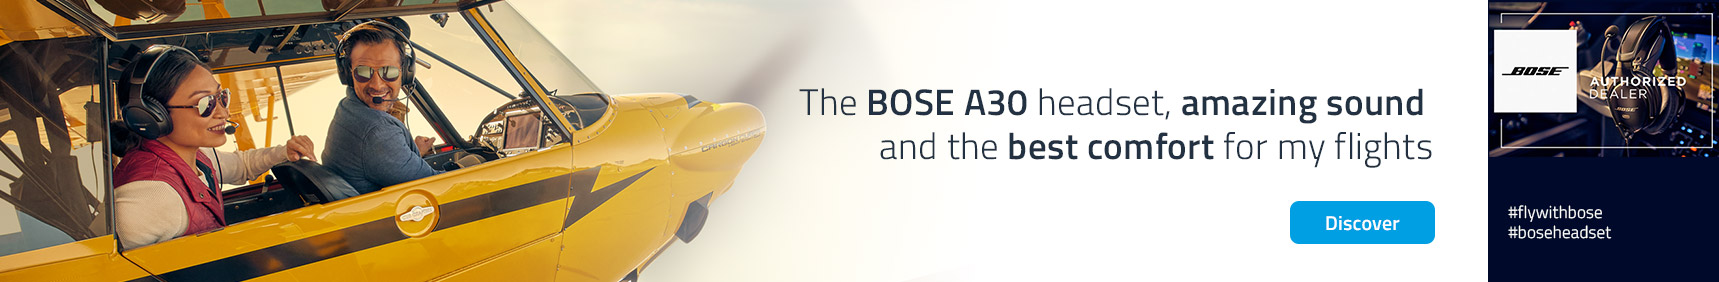 Bose A30 headset